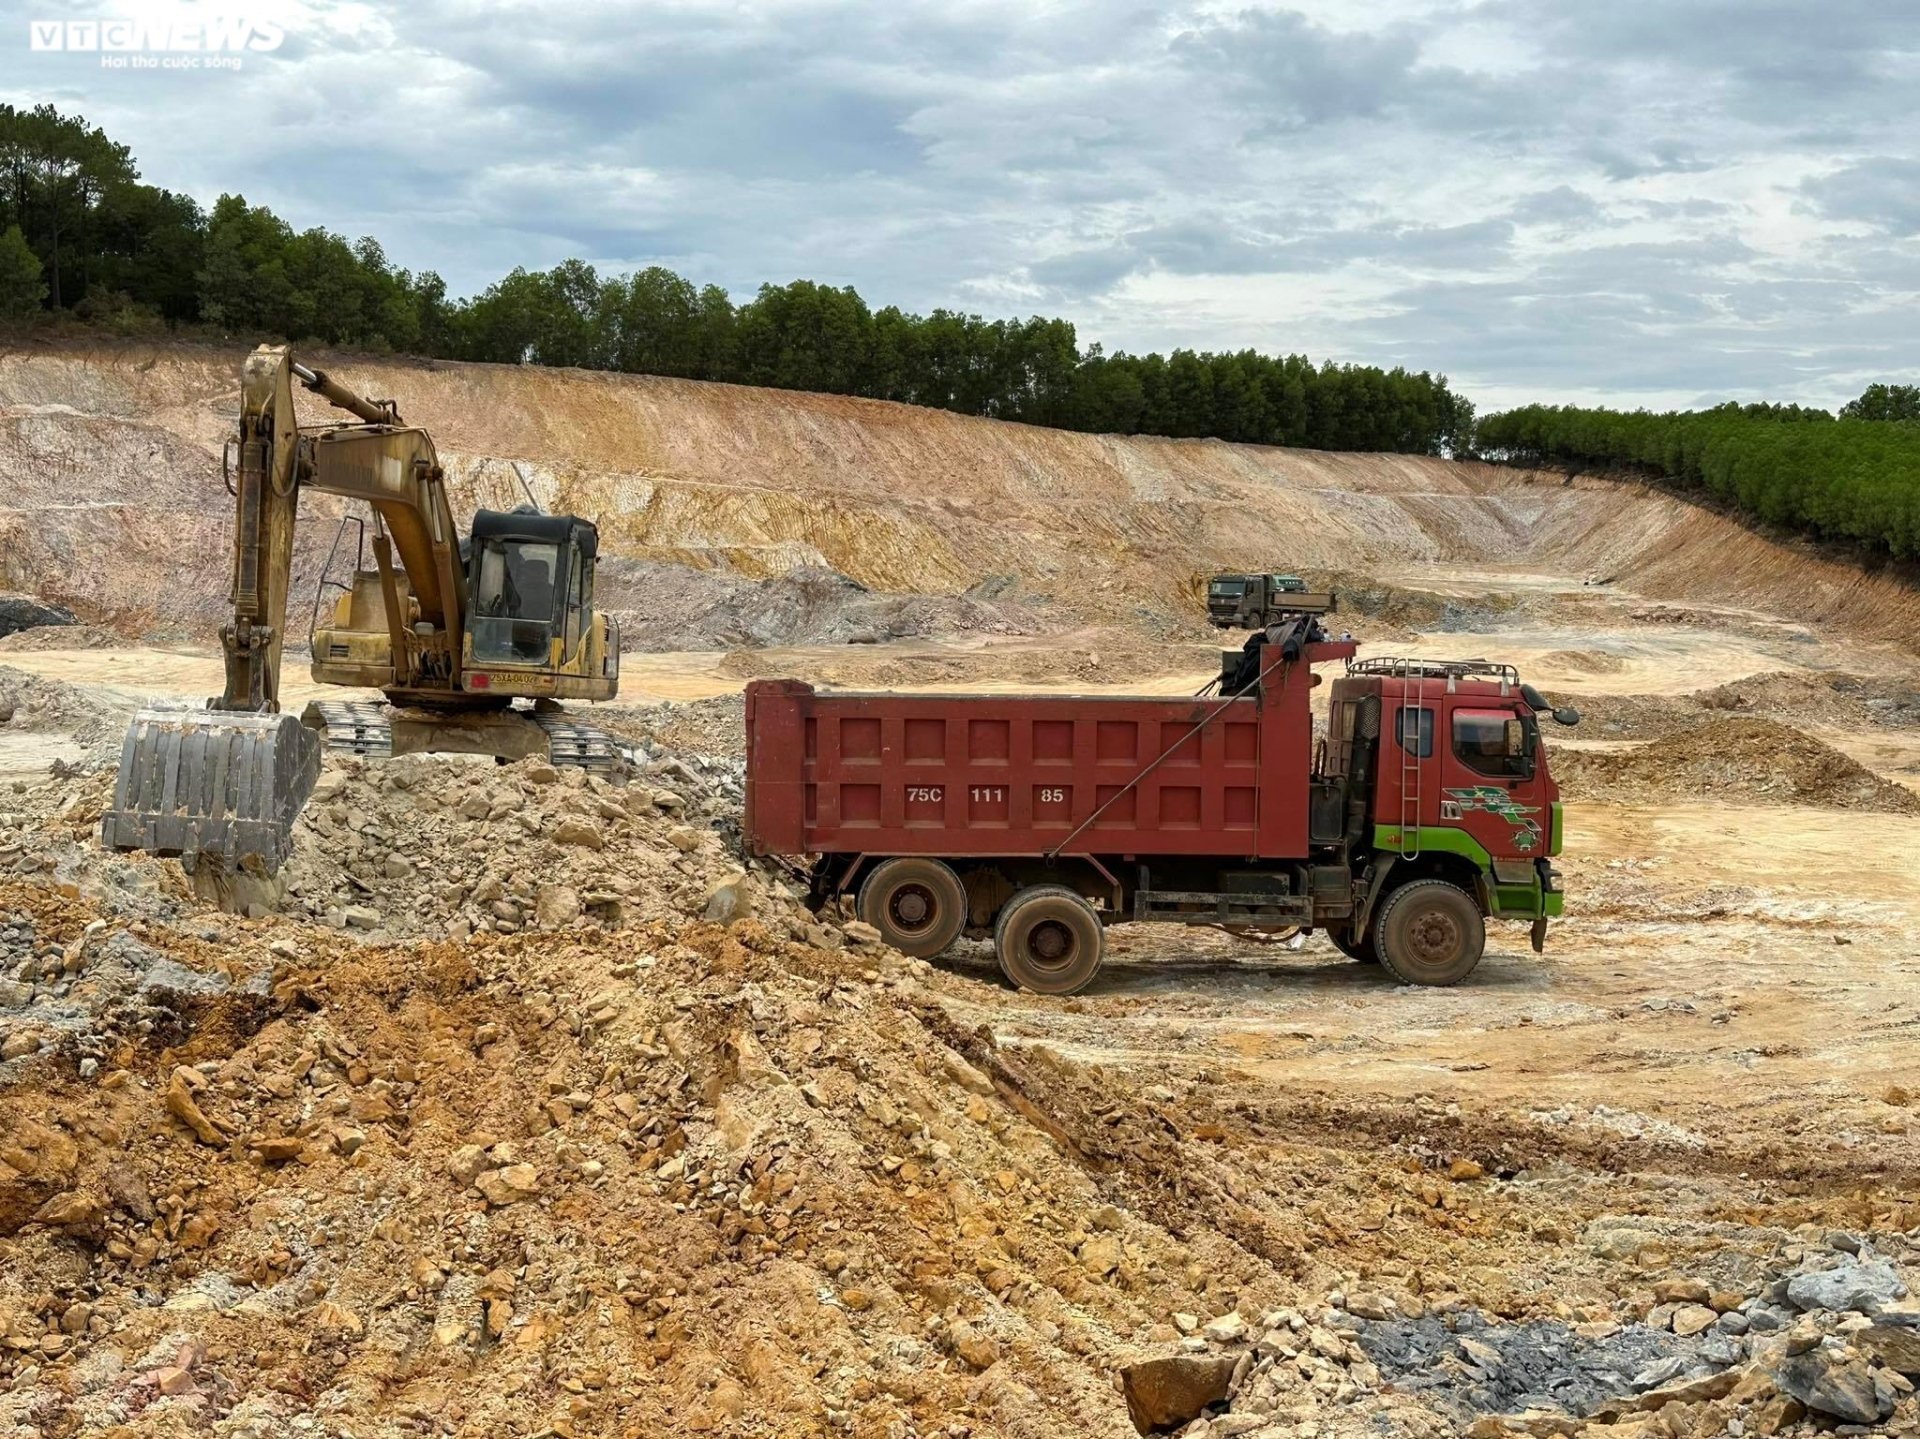 Thâm nhập đại công trường khai thác khoáng sản sai phép ở Thừa Thiên - Huế - Ảnh 9.